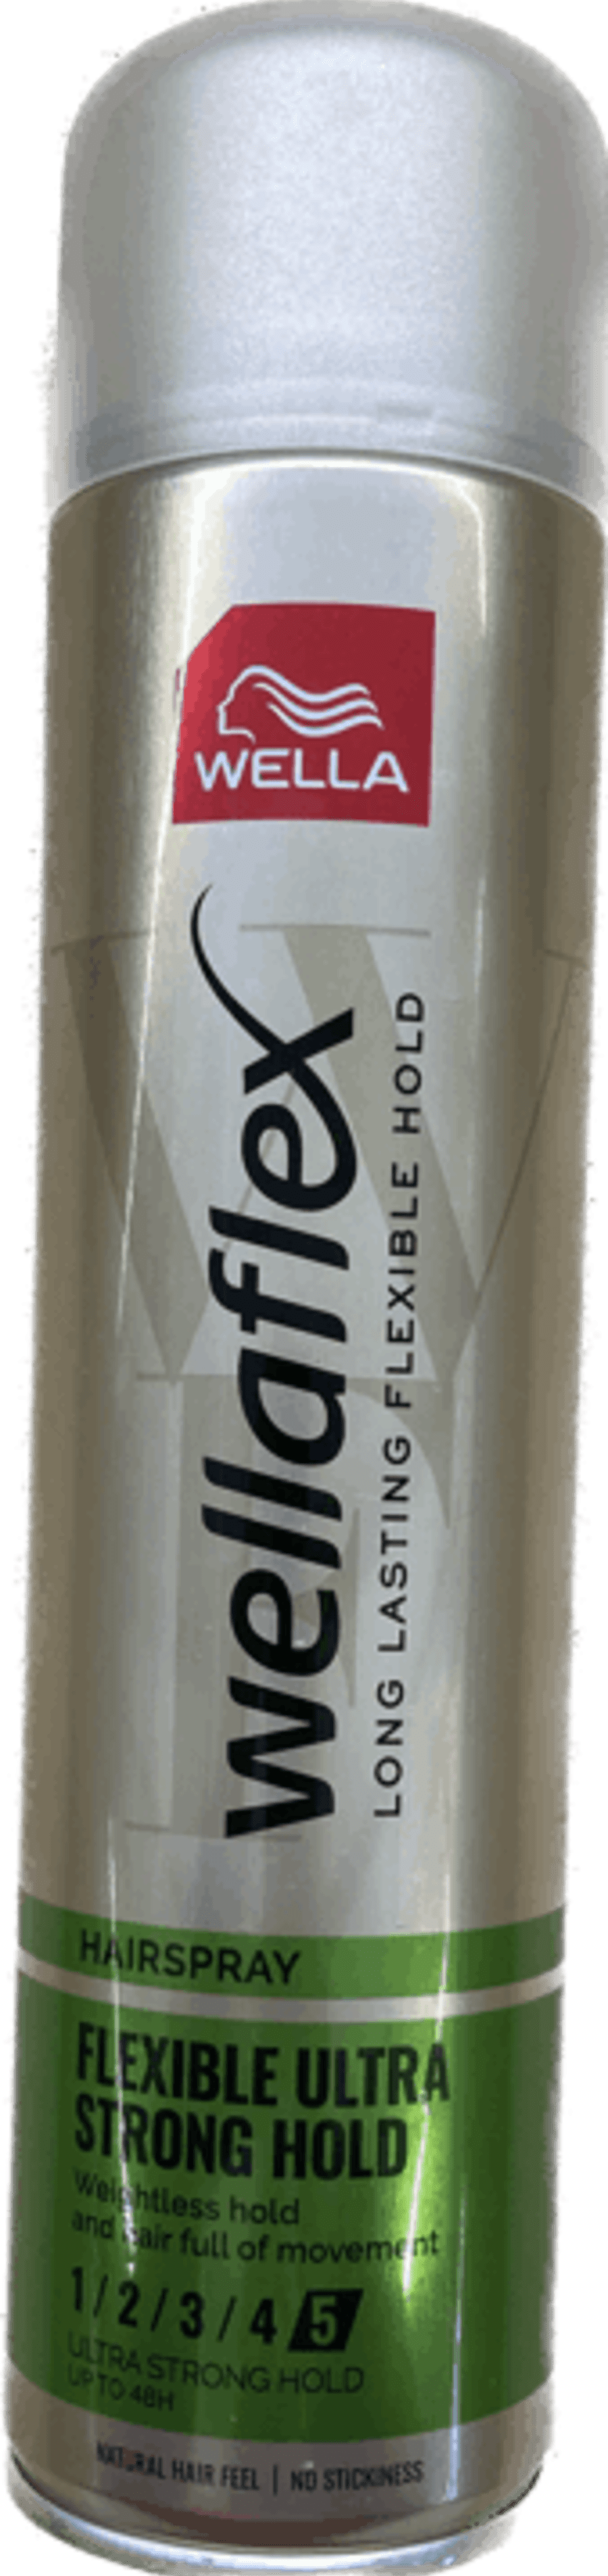 Wellaflex hárlakk ultra strong 400 ml